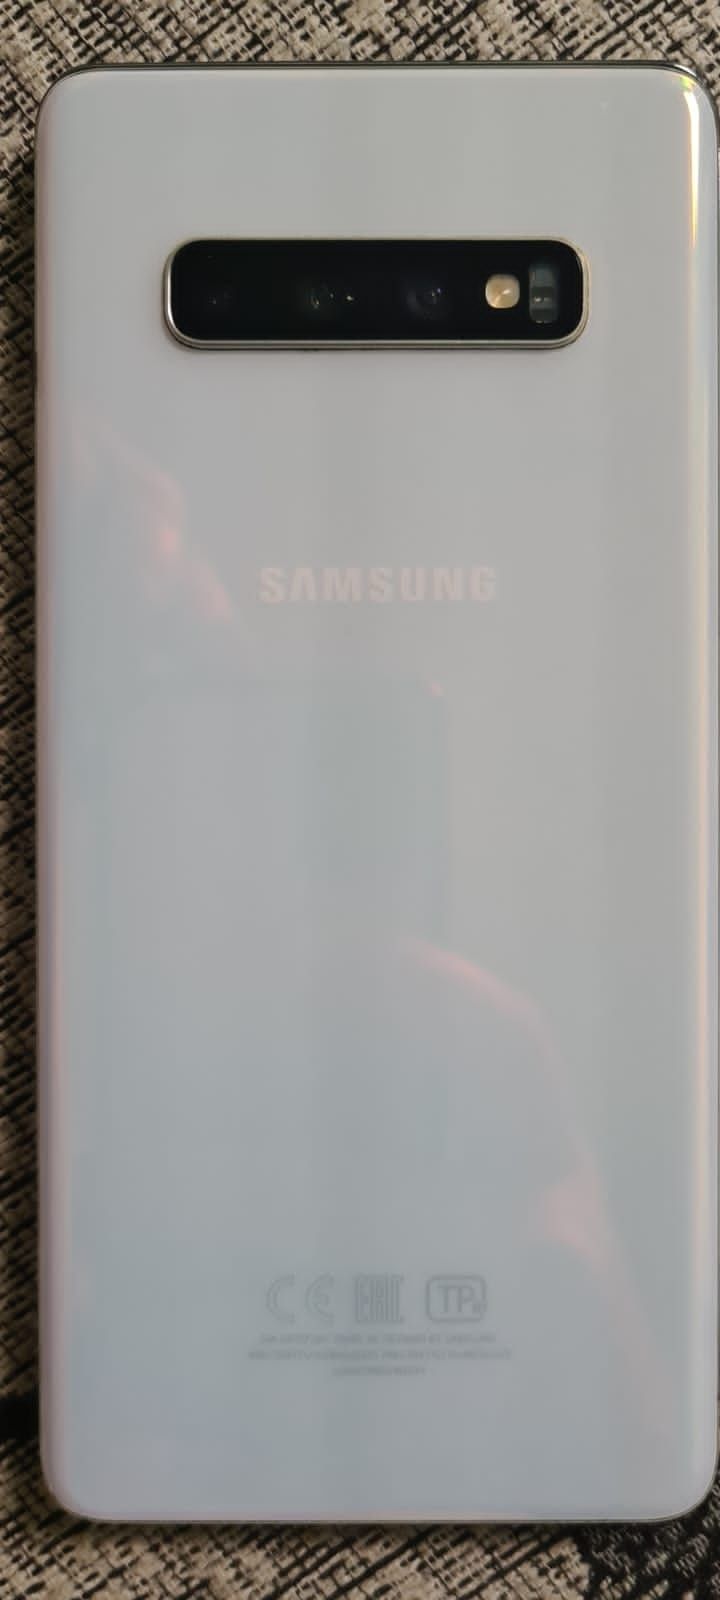 Samsung Galaxy S10.+